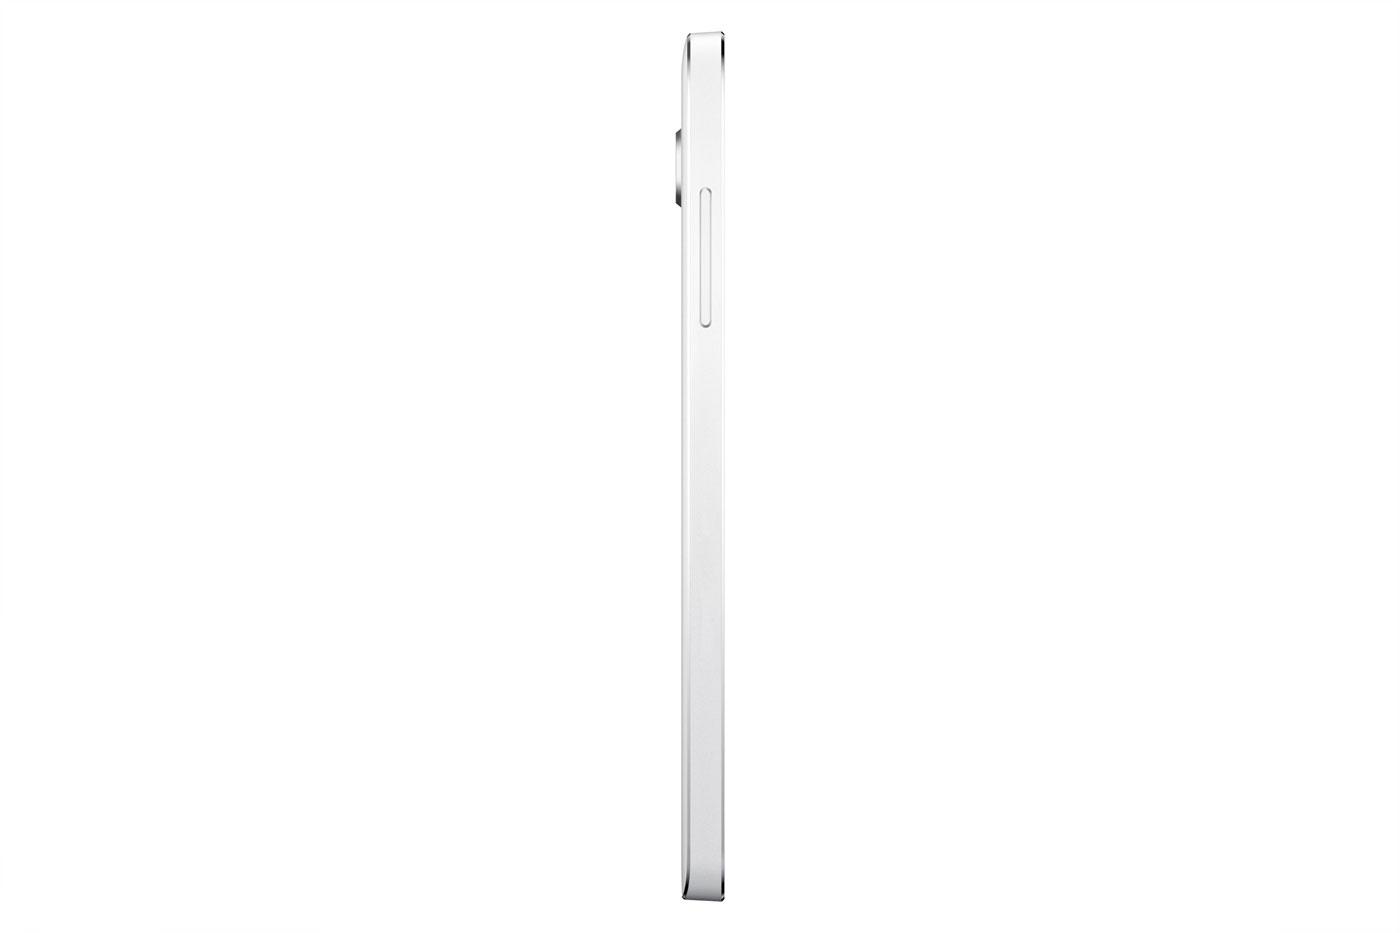 Samsung Galaxy A5 en color blanco vista lateral